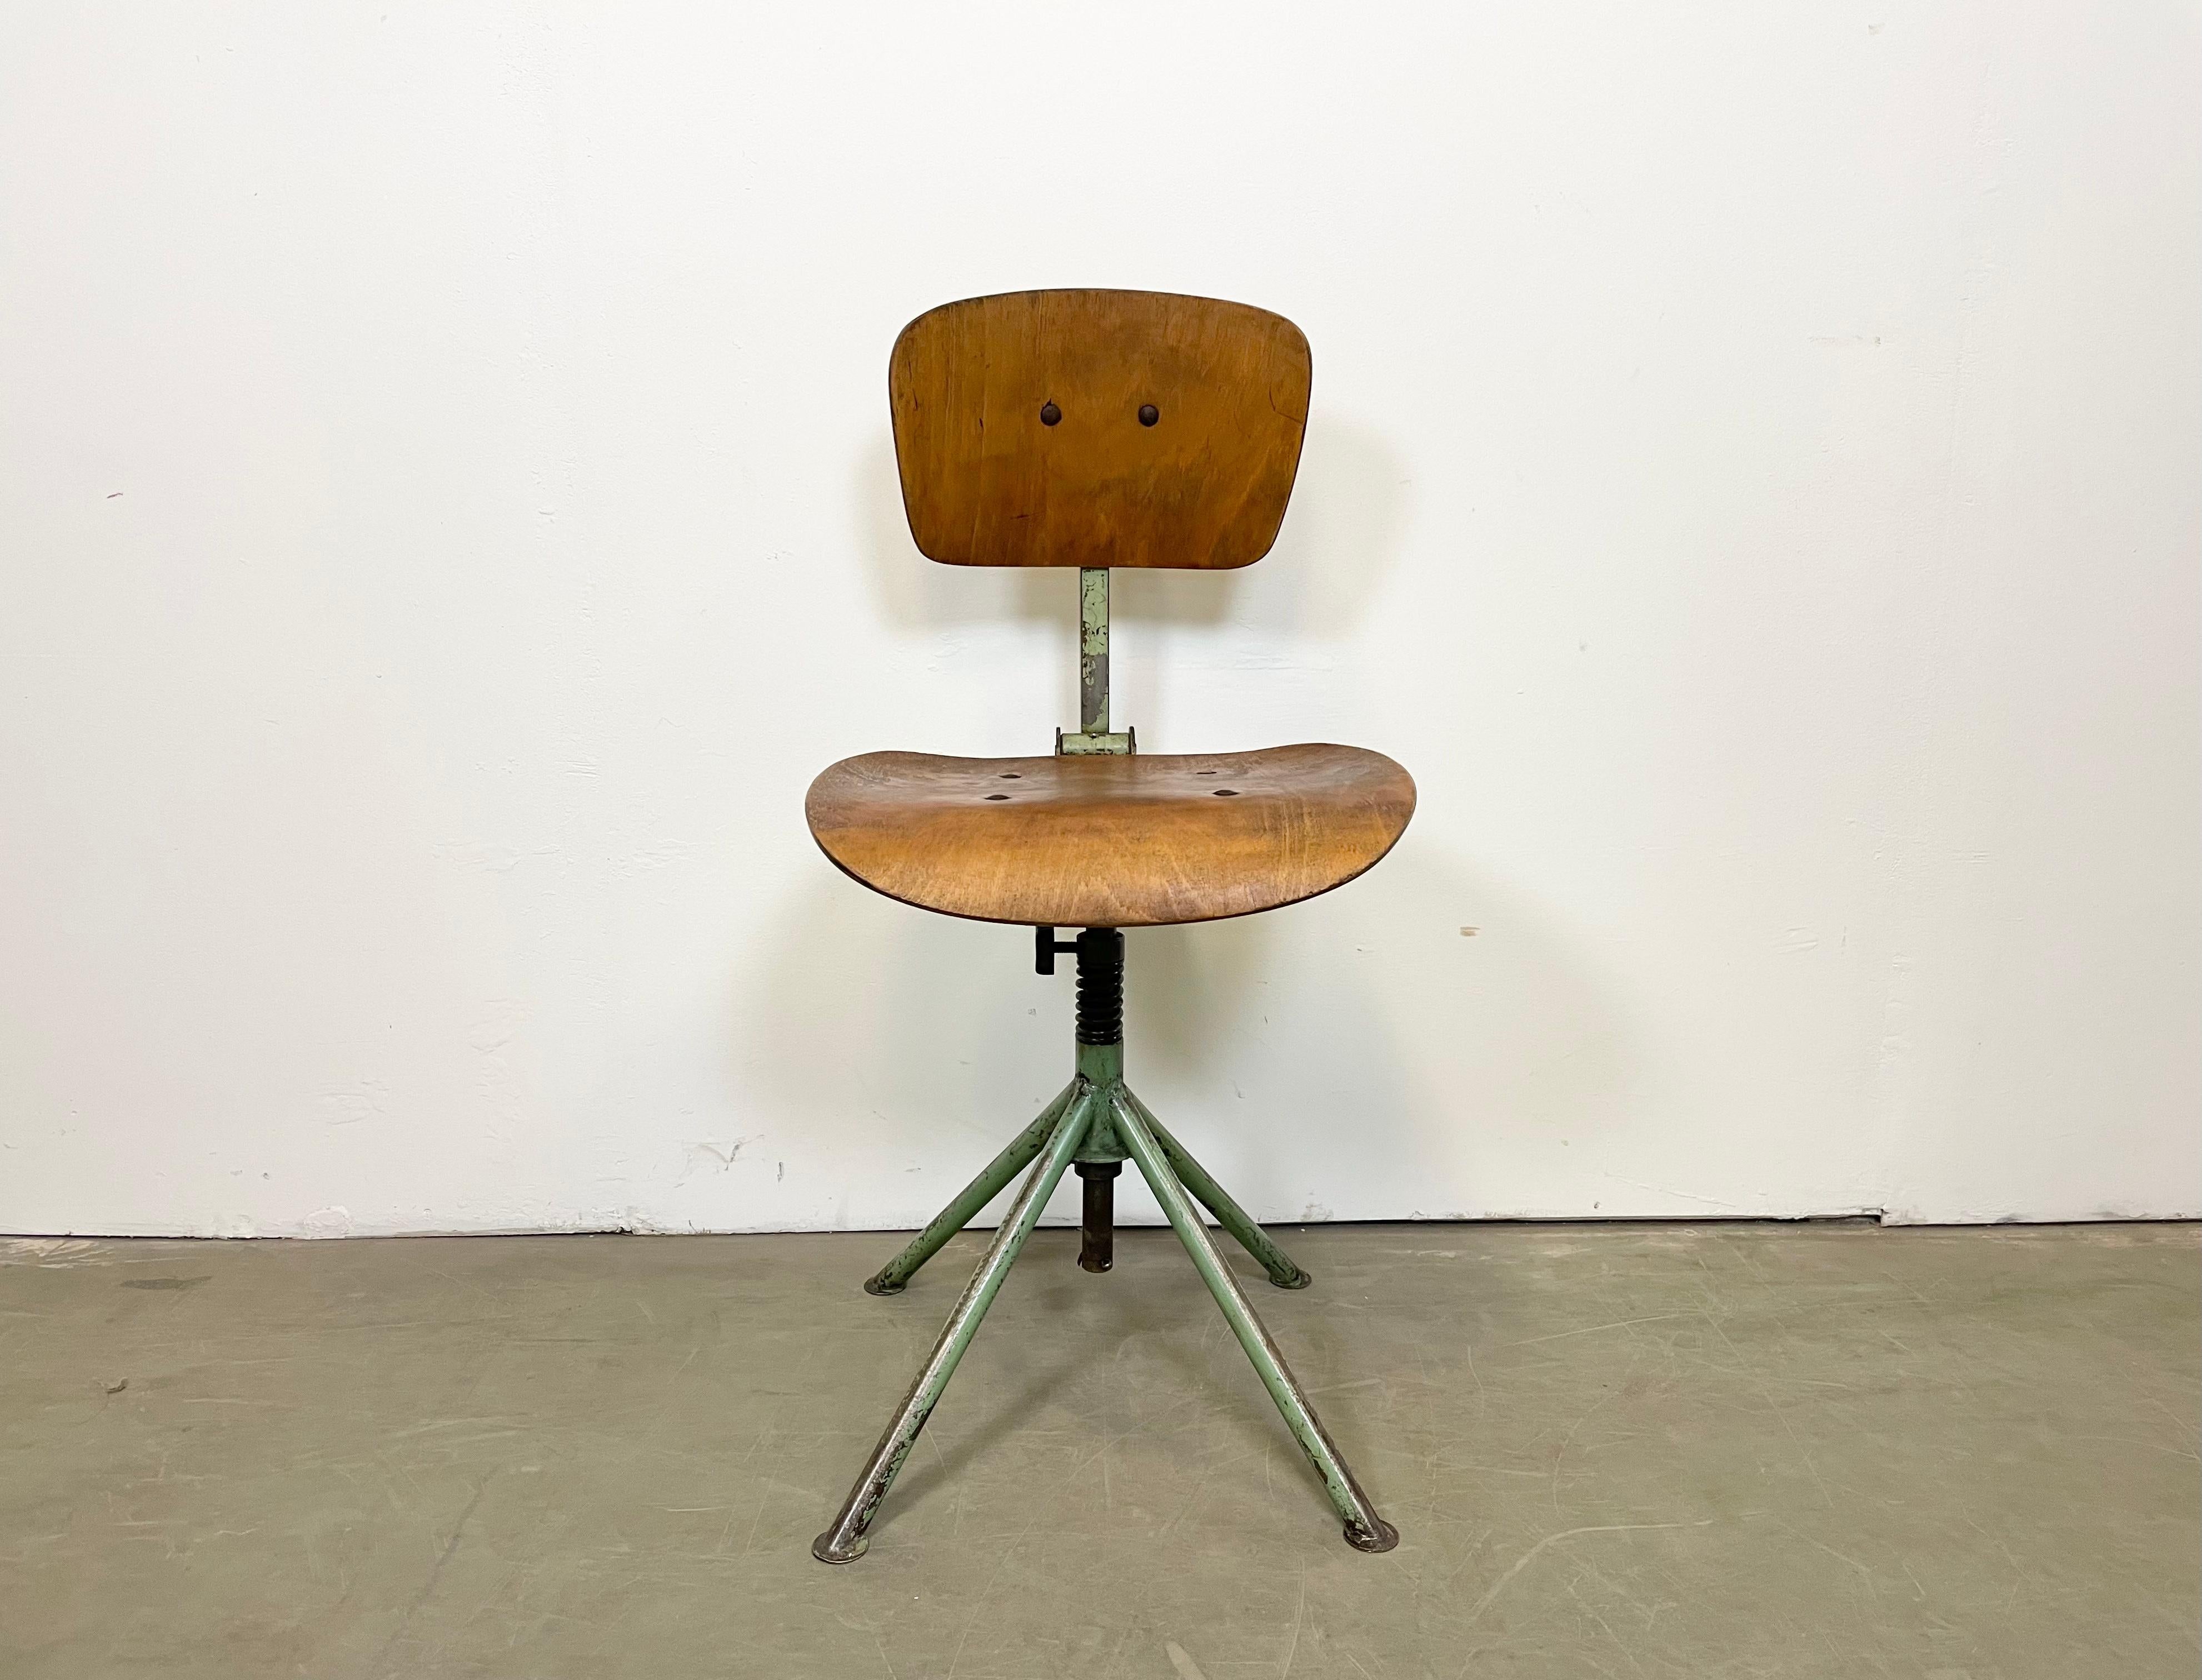 Dieser höhenverstellbare, drehbare Industriestuhl wurde in den 1950er Jahren in der ehemaligen Tschechoslowakei hergestellt und besteht aus einer Eisenkonstruktion sowie einer Sitzfläche und Rückenlehne aus Sperrholz. Das Gewicht des Stuhls beträgt